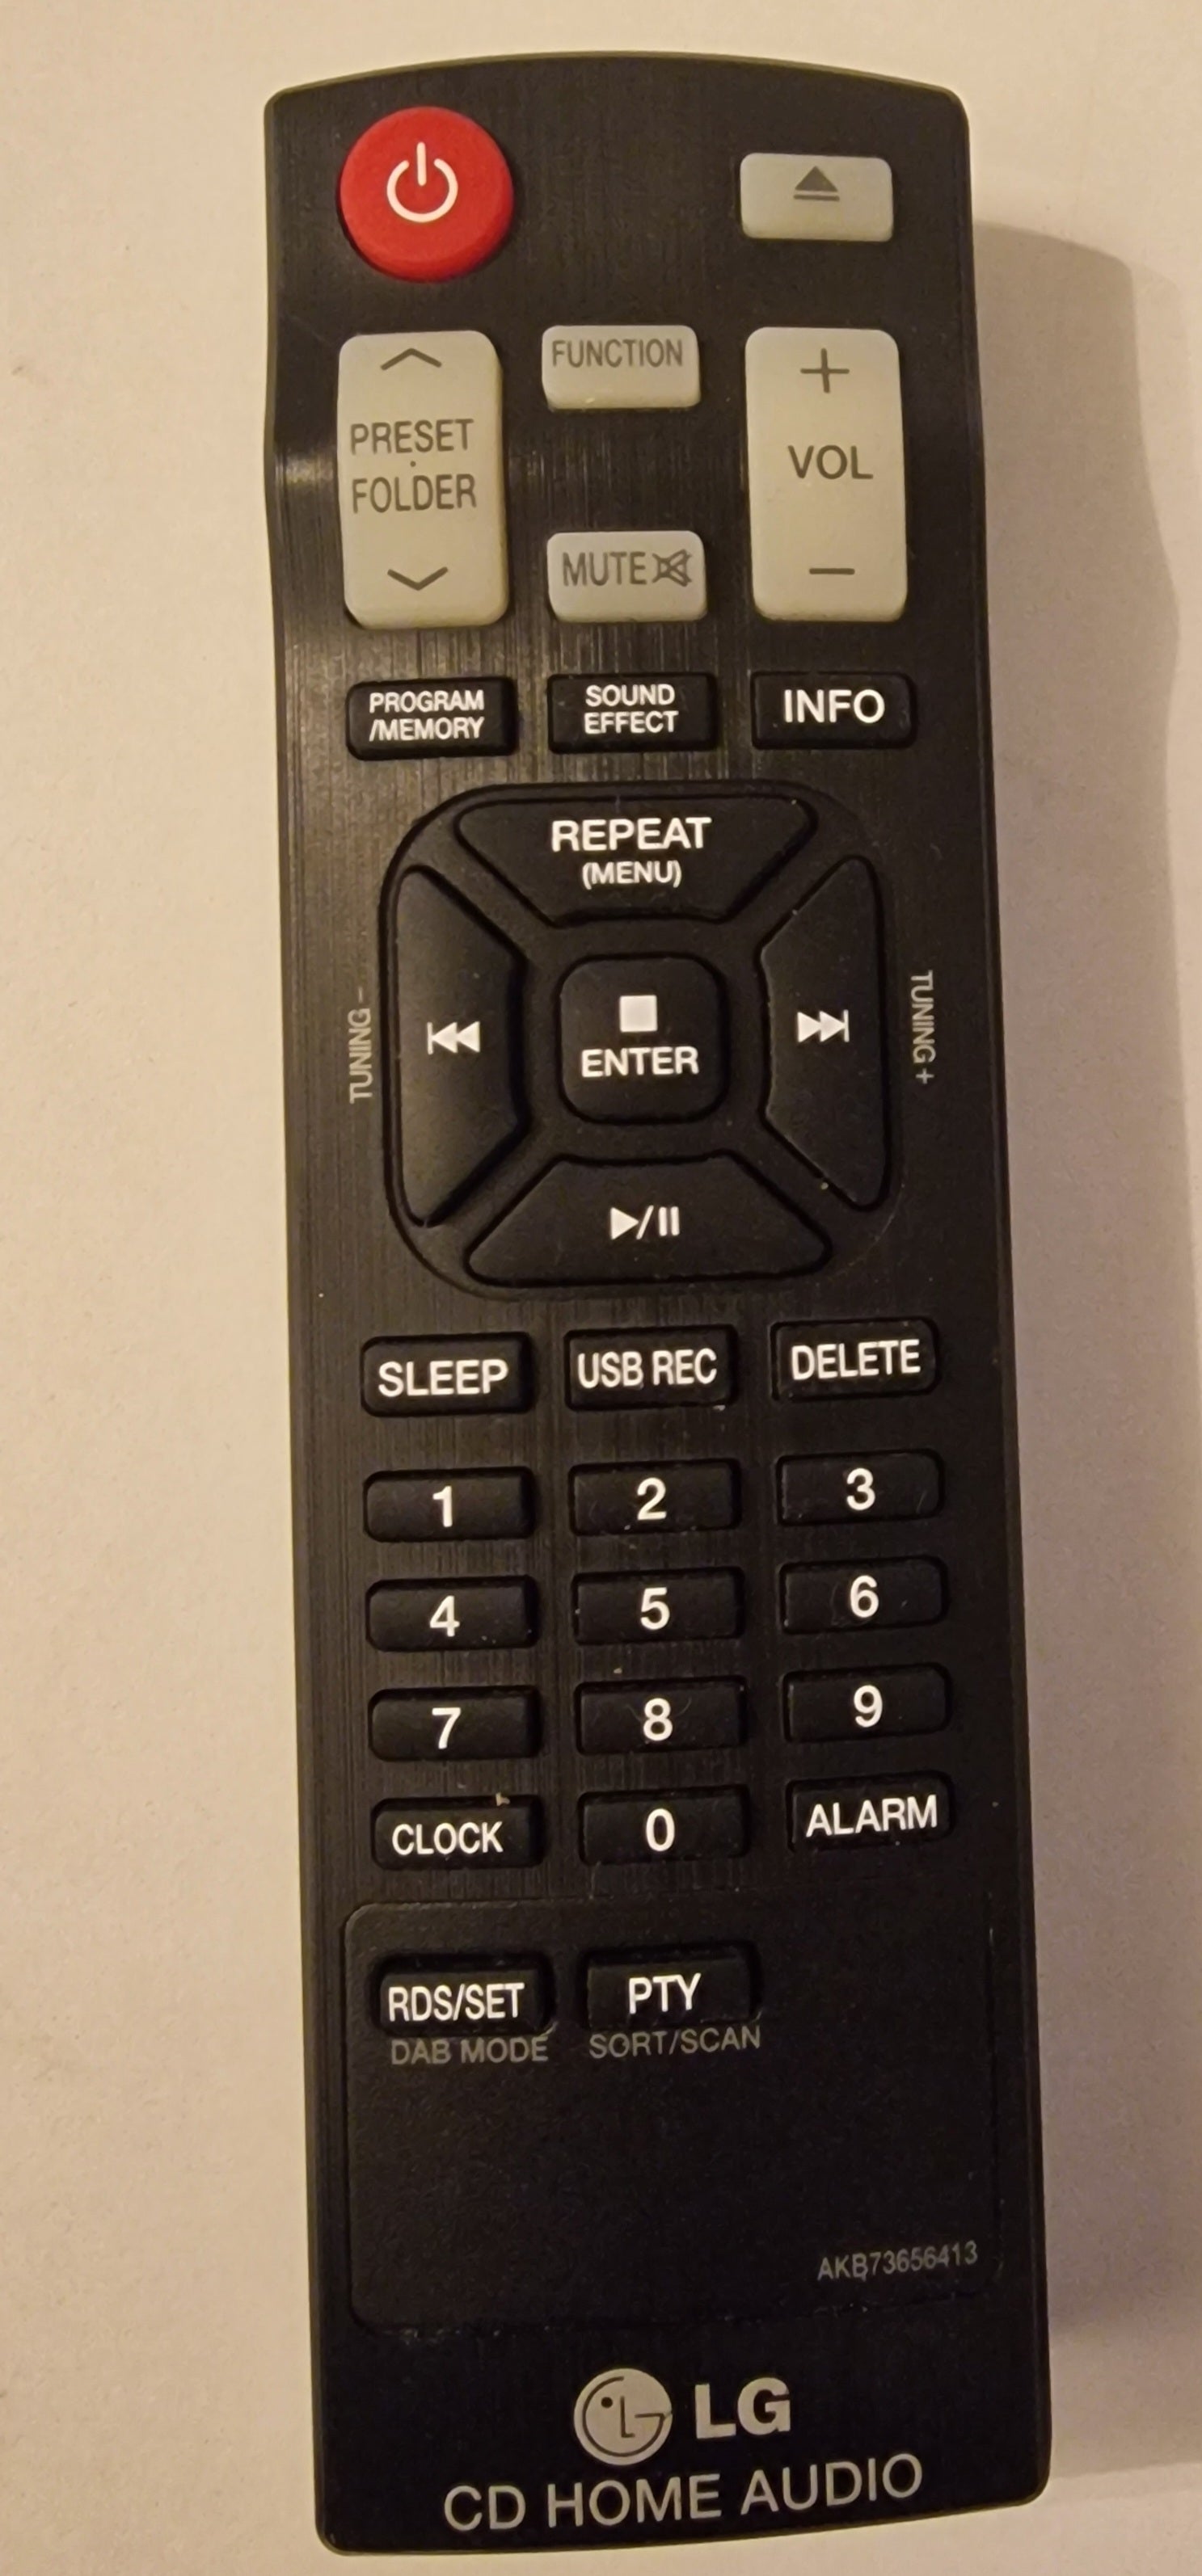 AKB73656413 - Control remoto compatible con LG CD Home Audio Micro Hi-Fi System FA168 CMS2640F